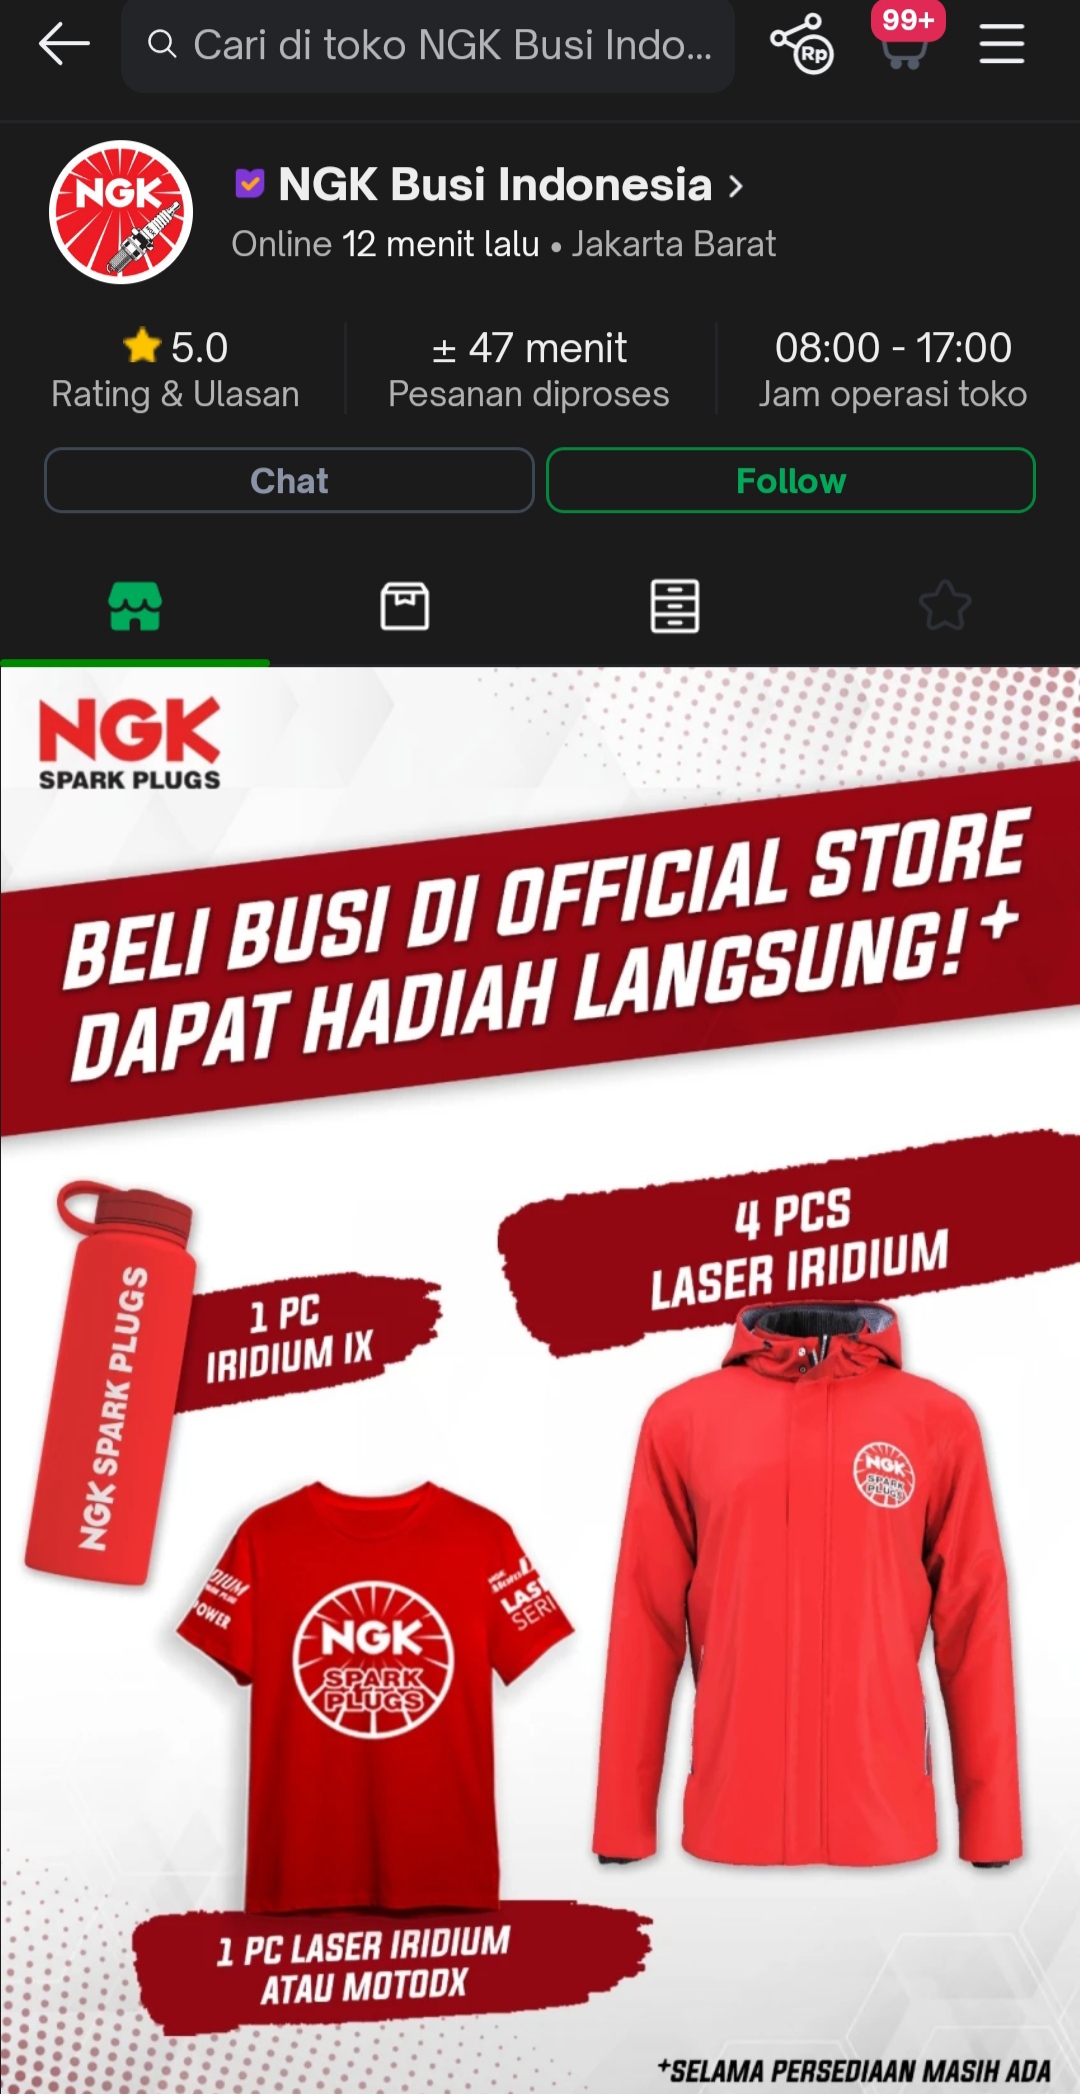 Official Store NGK di Shopee dan Tokopedia